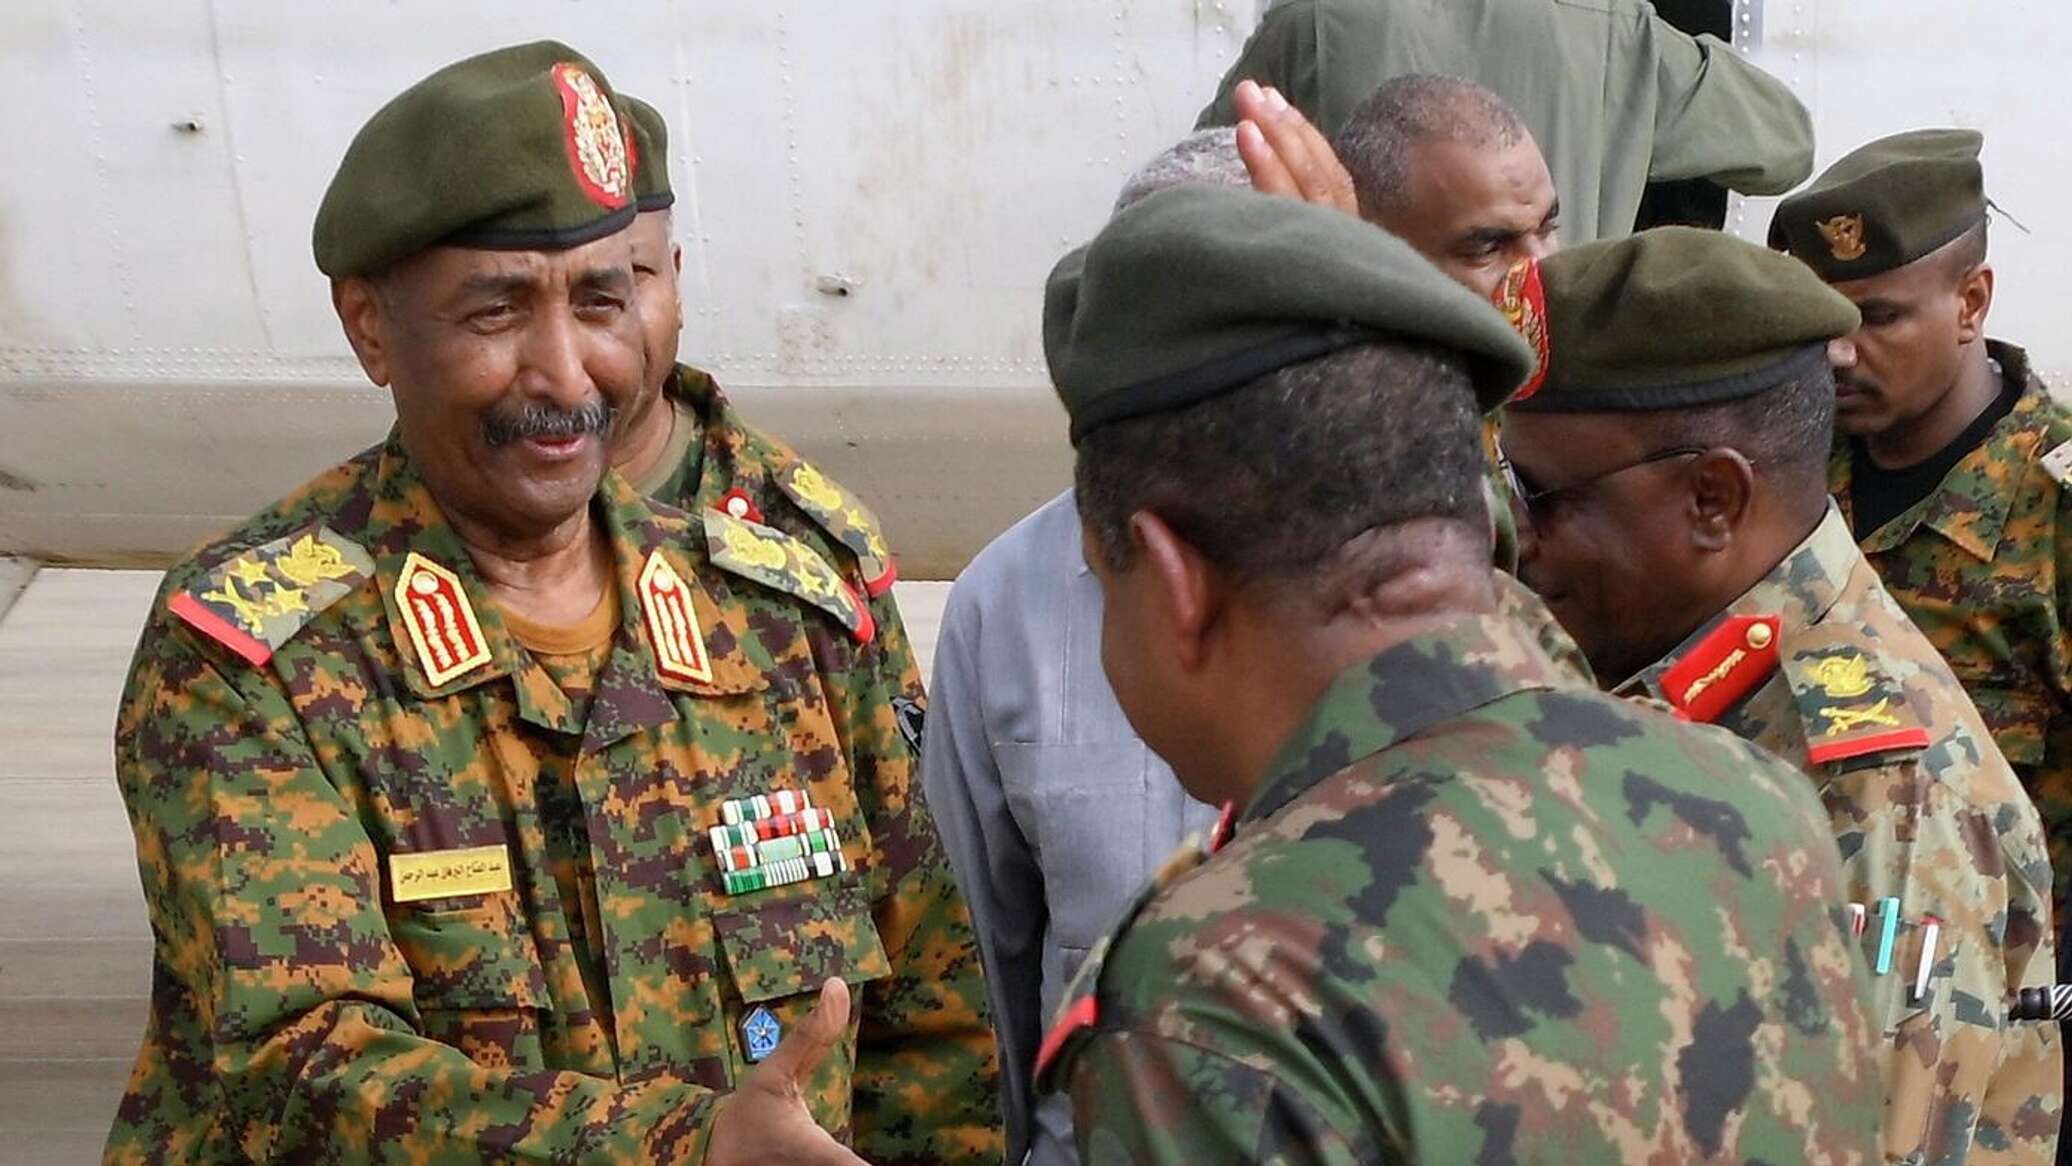 "الإسناد الإعلامي" للجيش السوداني: تغييرات على الأرض بعد انضمام الحركات المسلحة للقوات النظامية